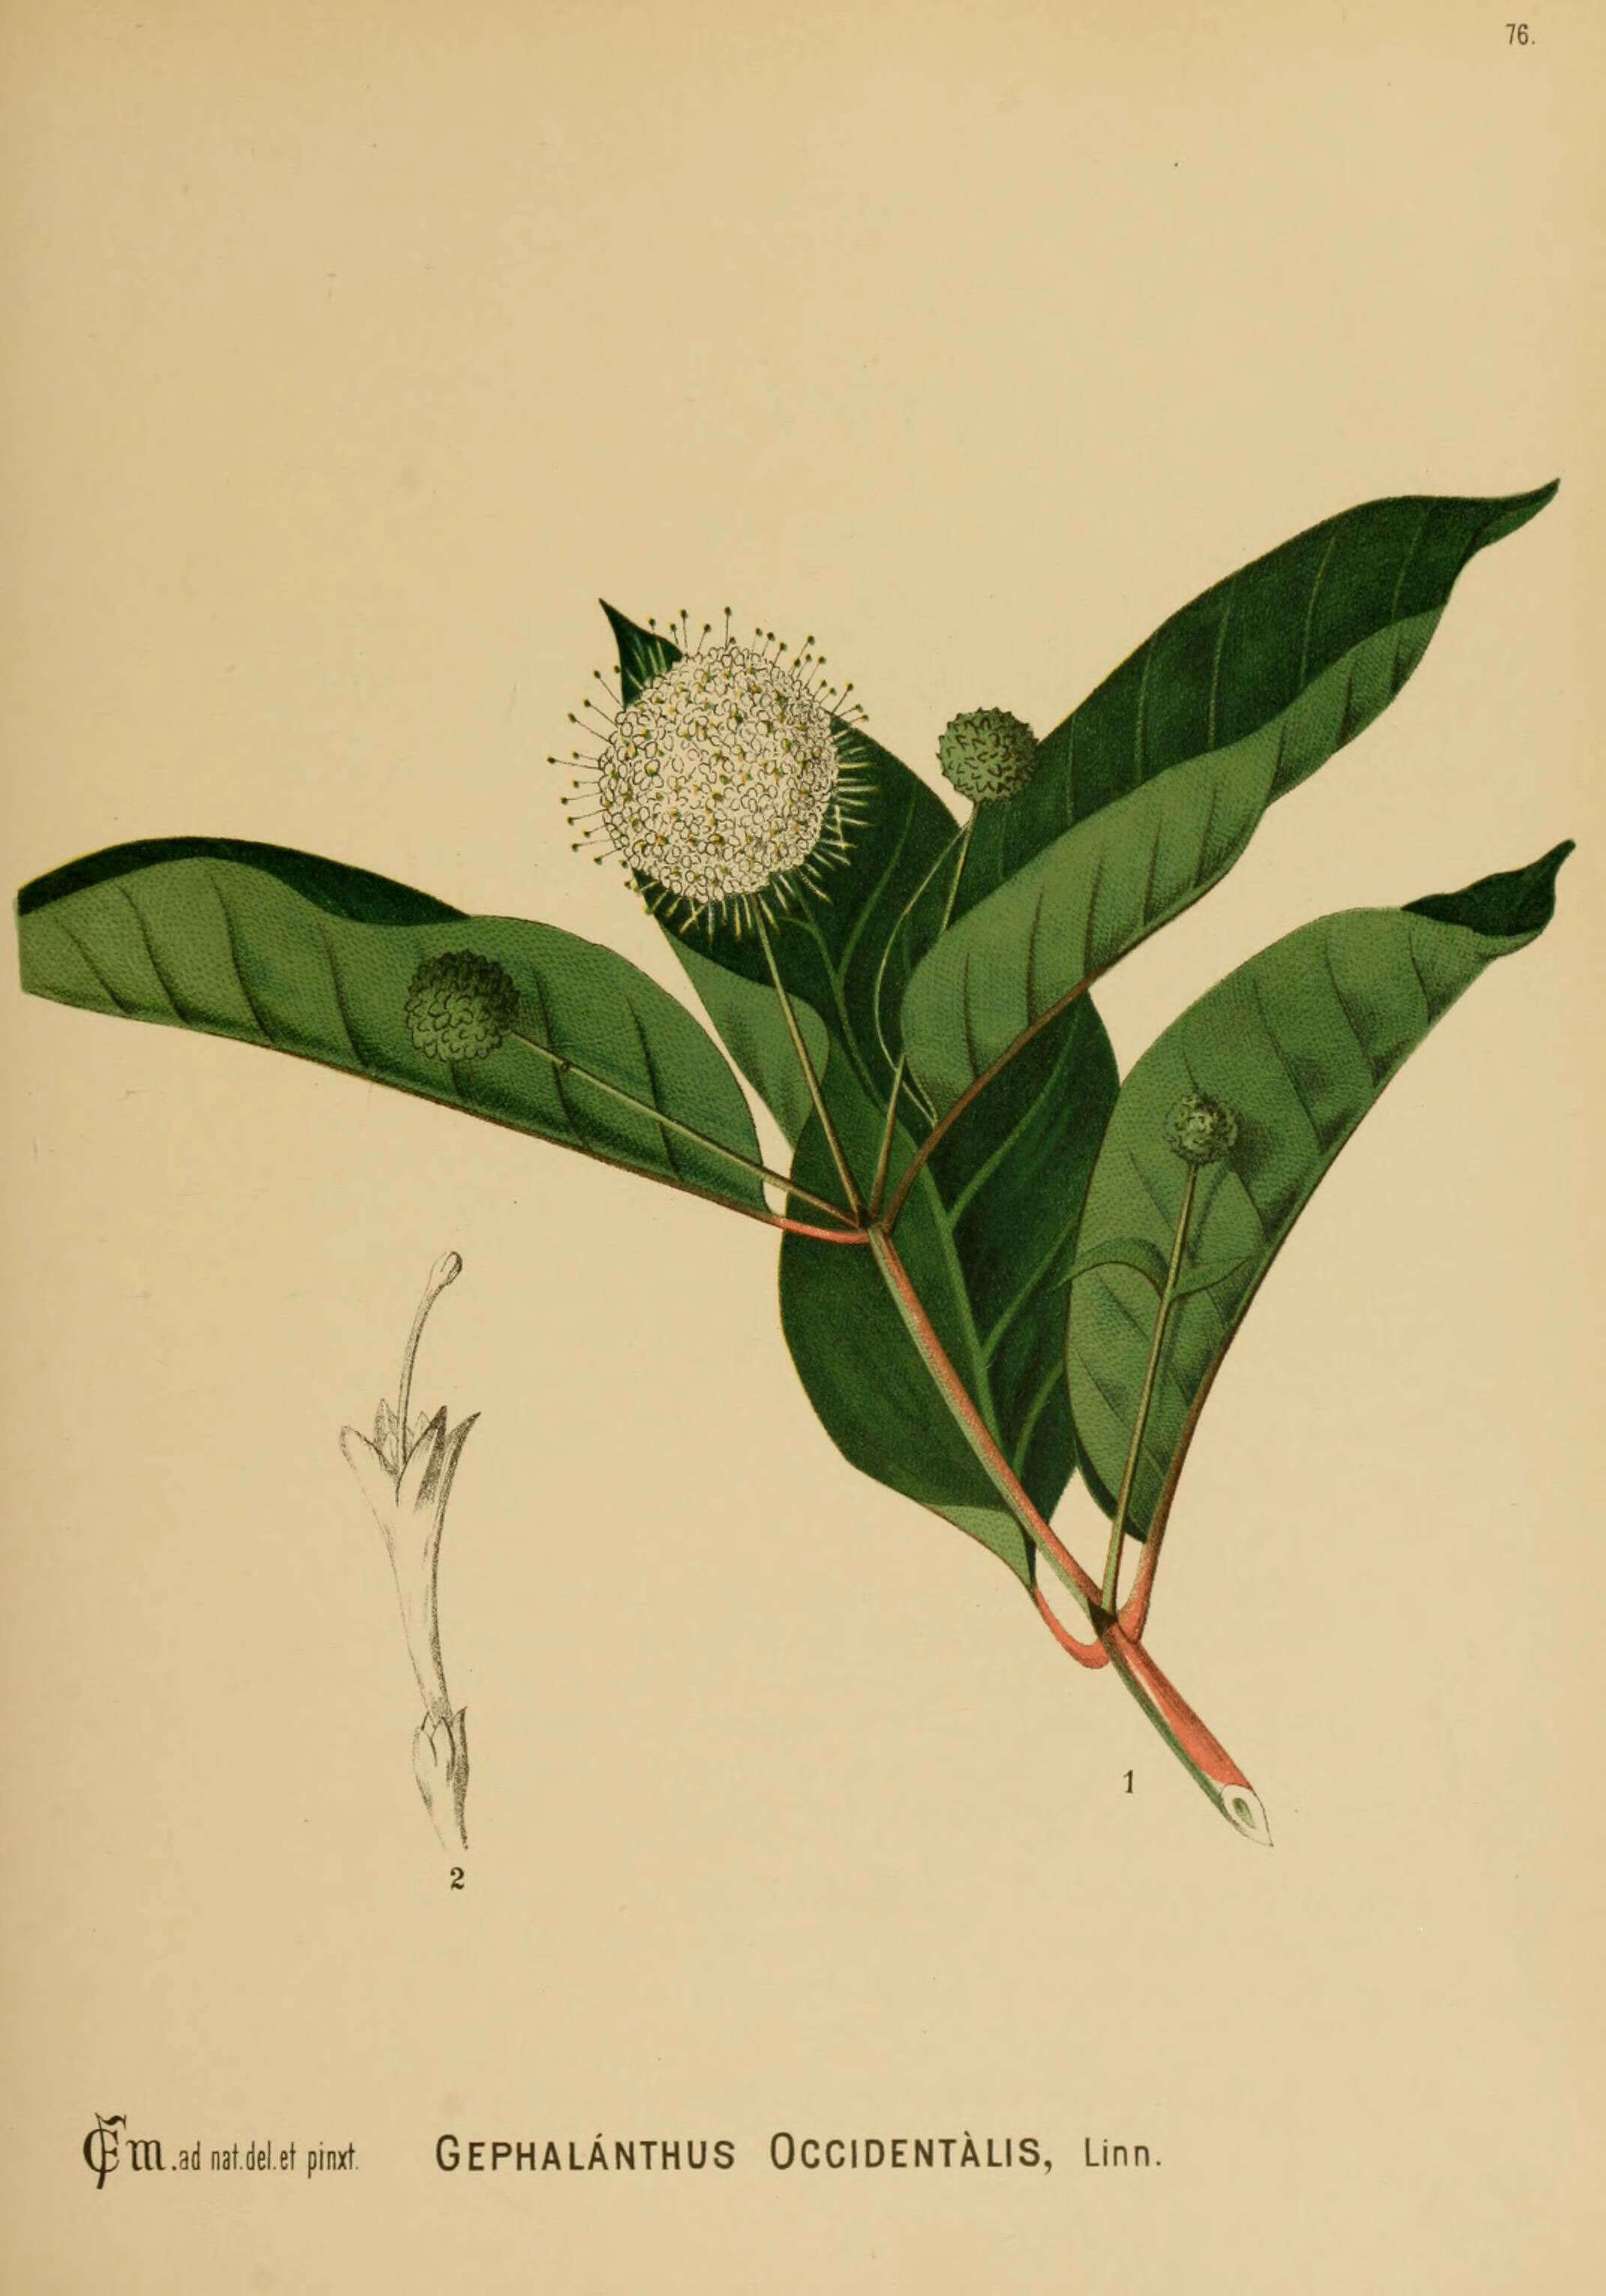 Image of common buttonbush